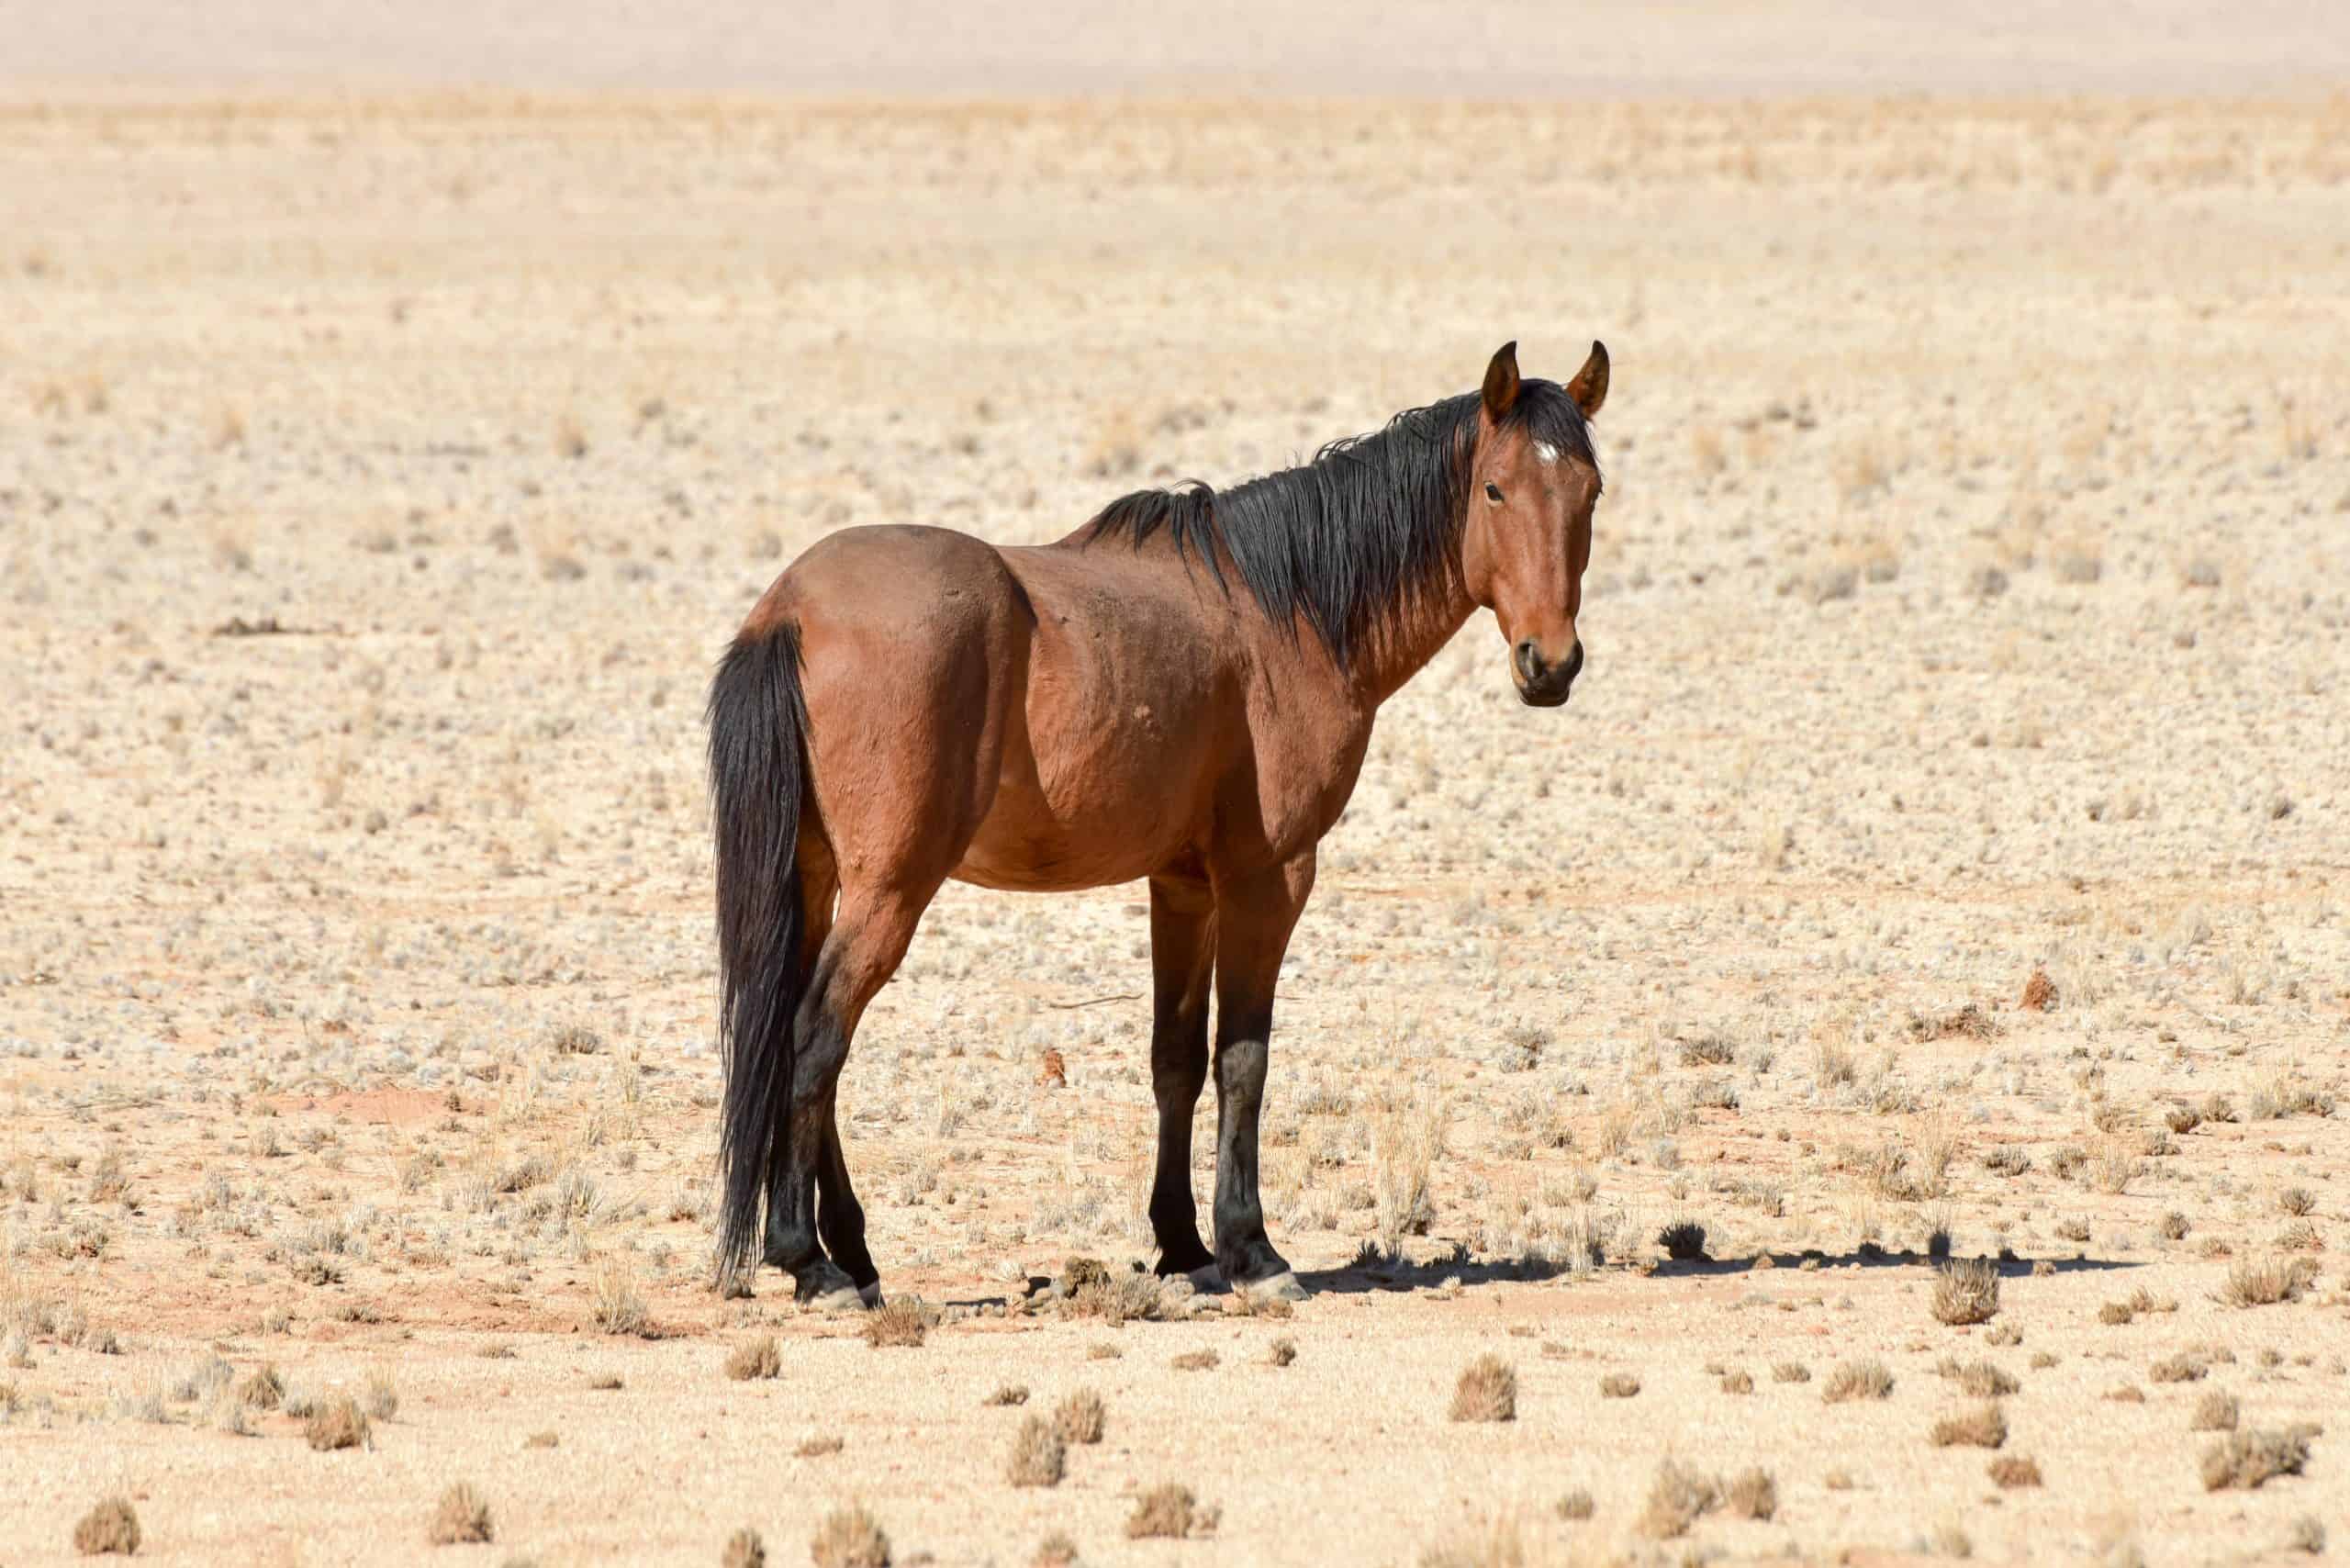 Horses in the desert landscape of Namibia.